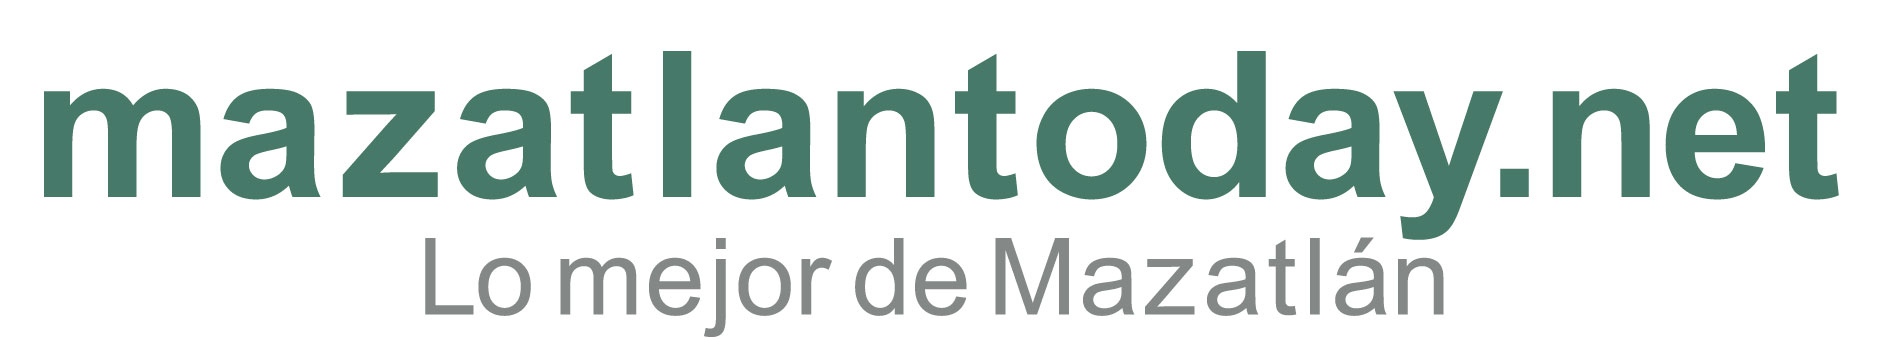 Pedro Infante Museo Guía de consejos y atracciones turísticas | mazatlantoday.net presentación de guía de viaje 2023 | INICIO